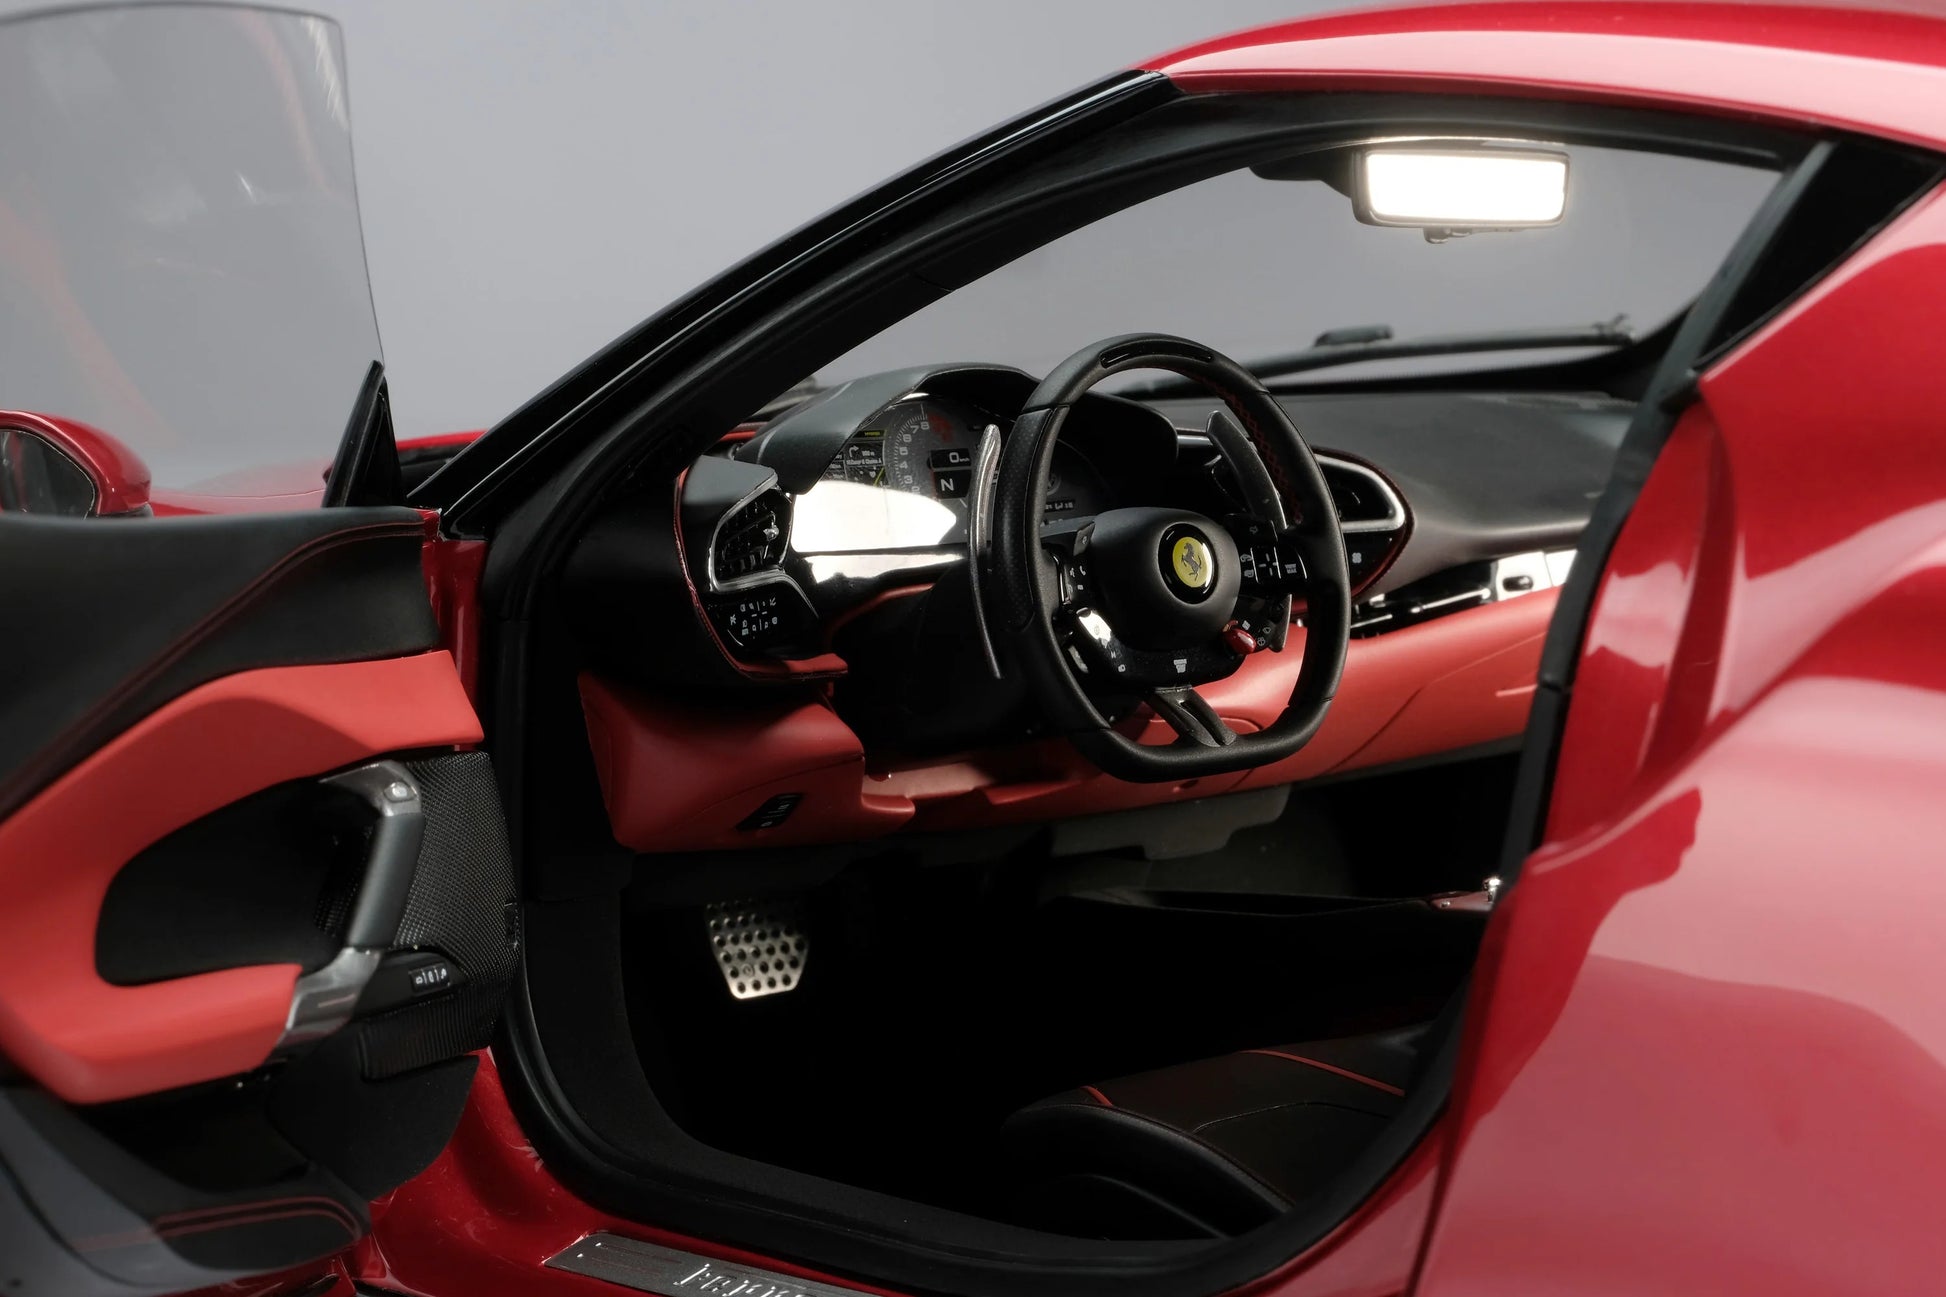 Amalgam Collection Ferrari 296 GTB 1:8 scale Model Car | 2JOUR CONCIERGE #1 luxury high-end gift & lifestyle shop